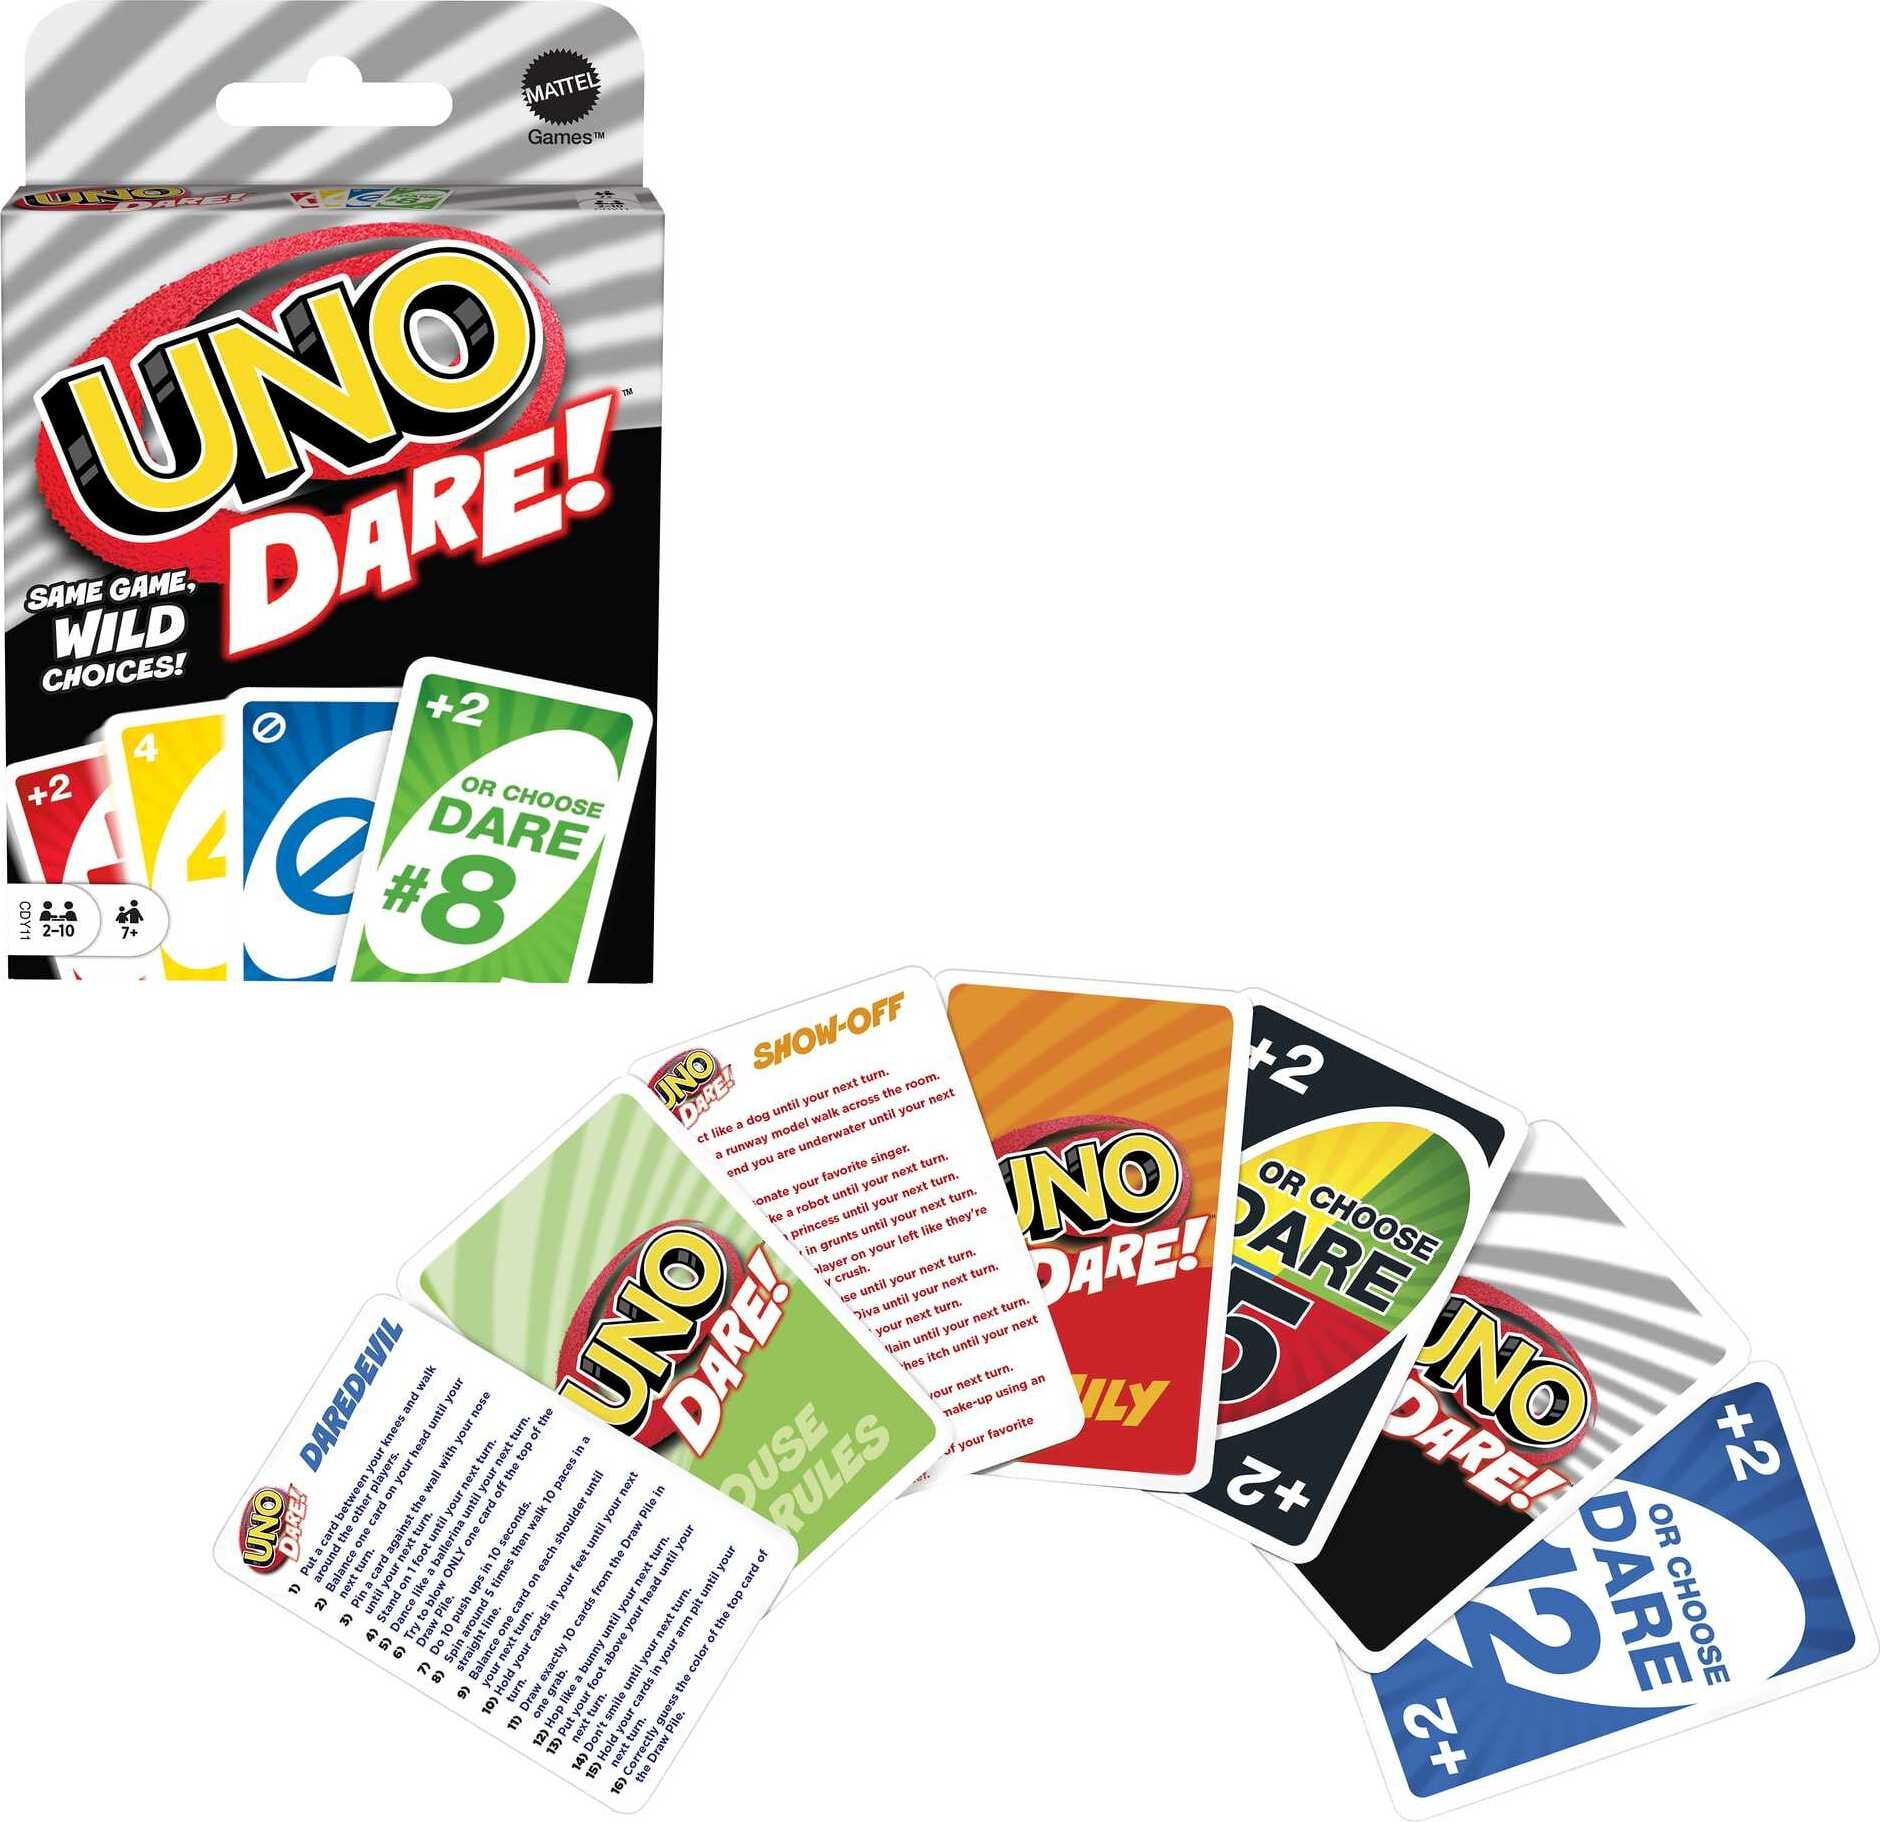 BO CARD GAME   2 TO 6 PLAYERS GUARANTEED FAMILY FUN  MATTEL SKIP 